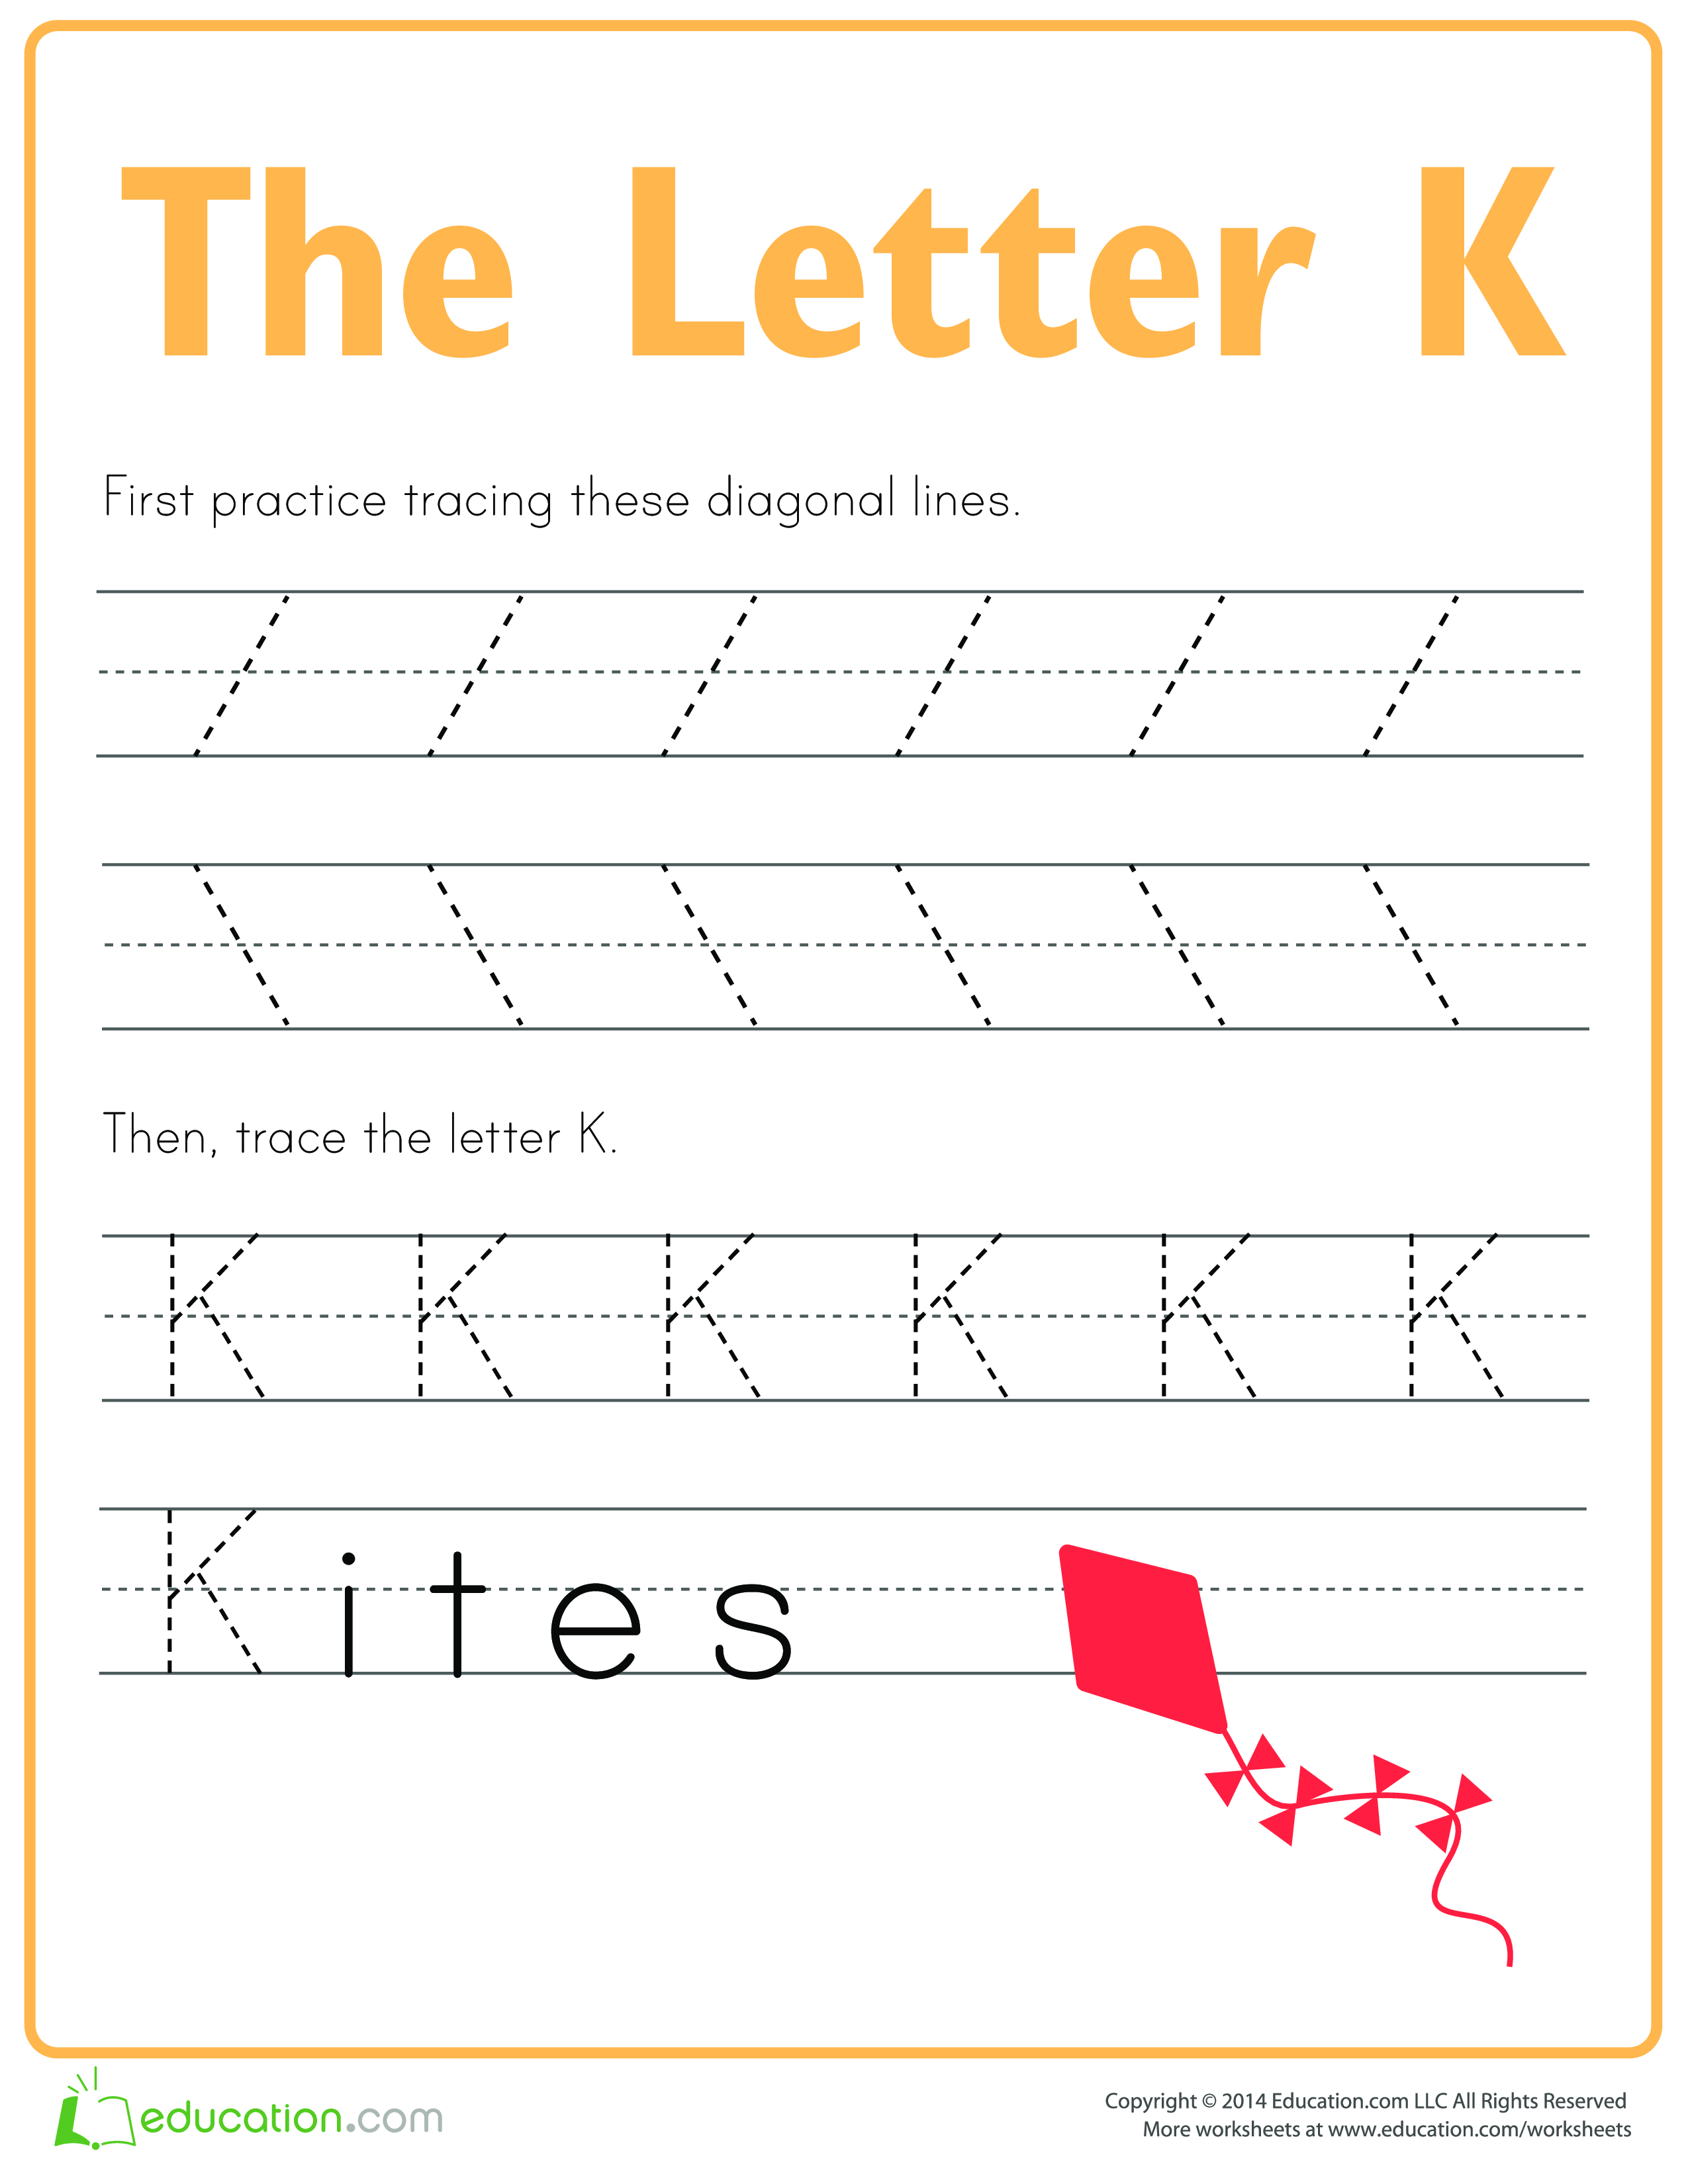 letter-k-tracing-worksheets-tracinglettersworksheetscom-printable-letter-k-tracing-worksheets